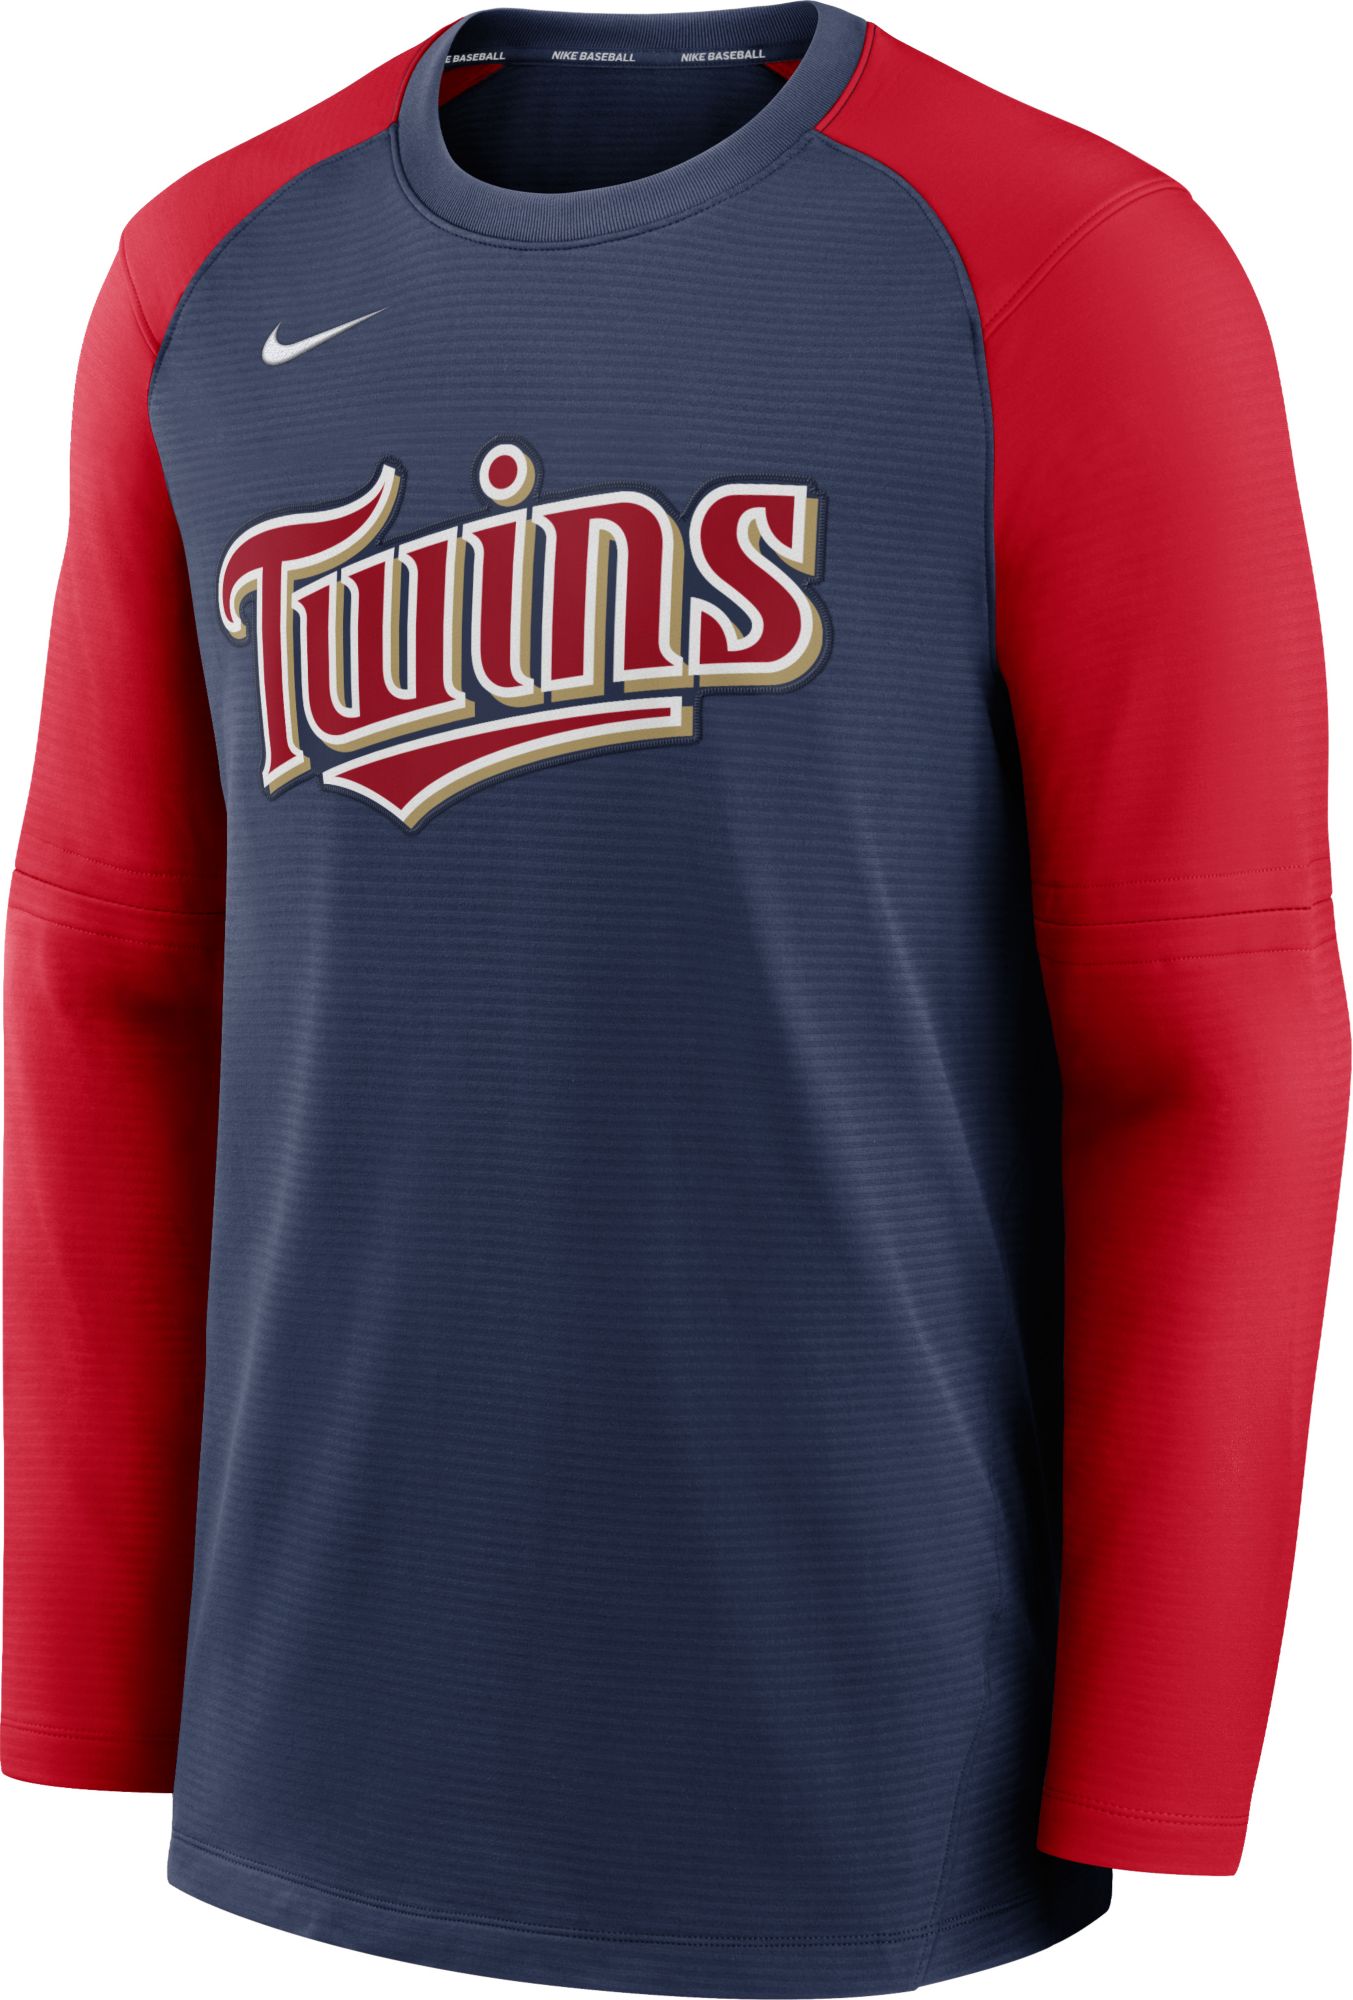 Nike, Shirts, Nike Minnesota Twins Jersey